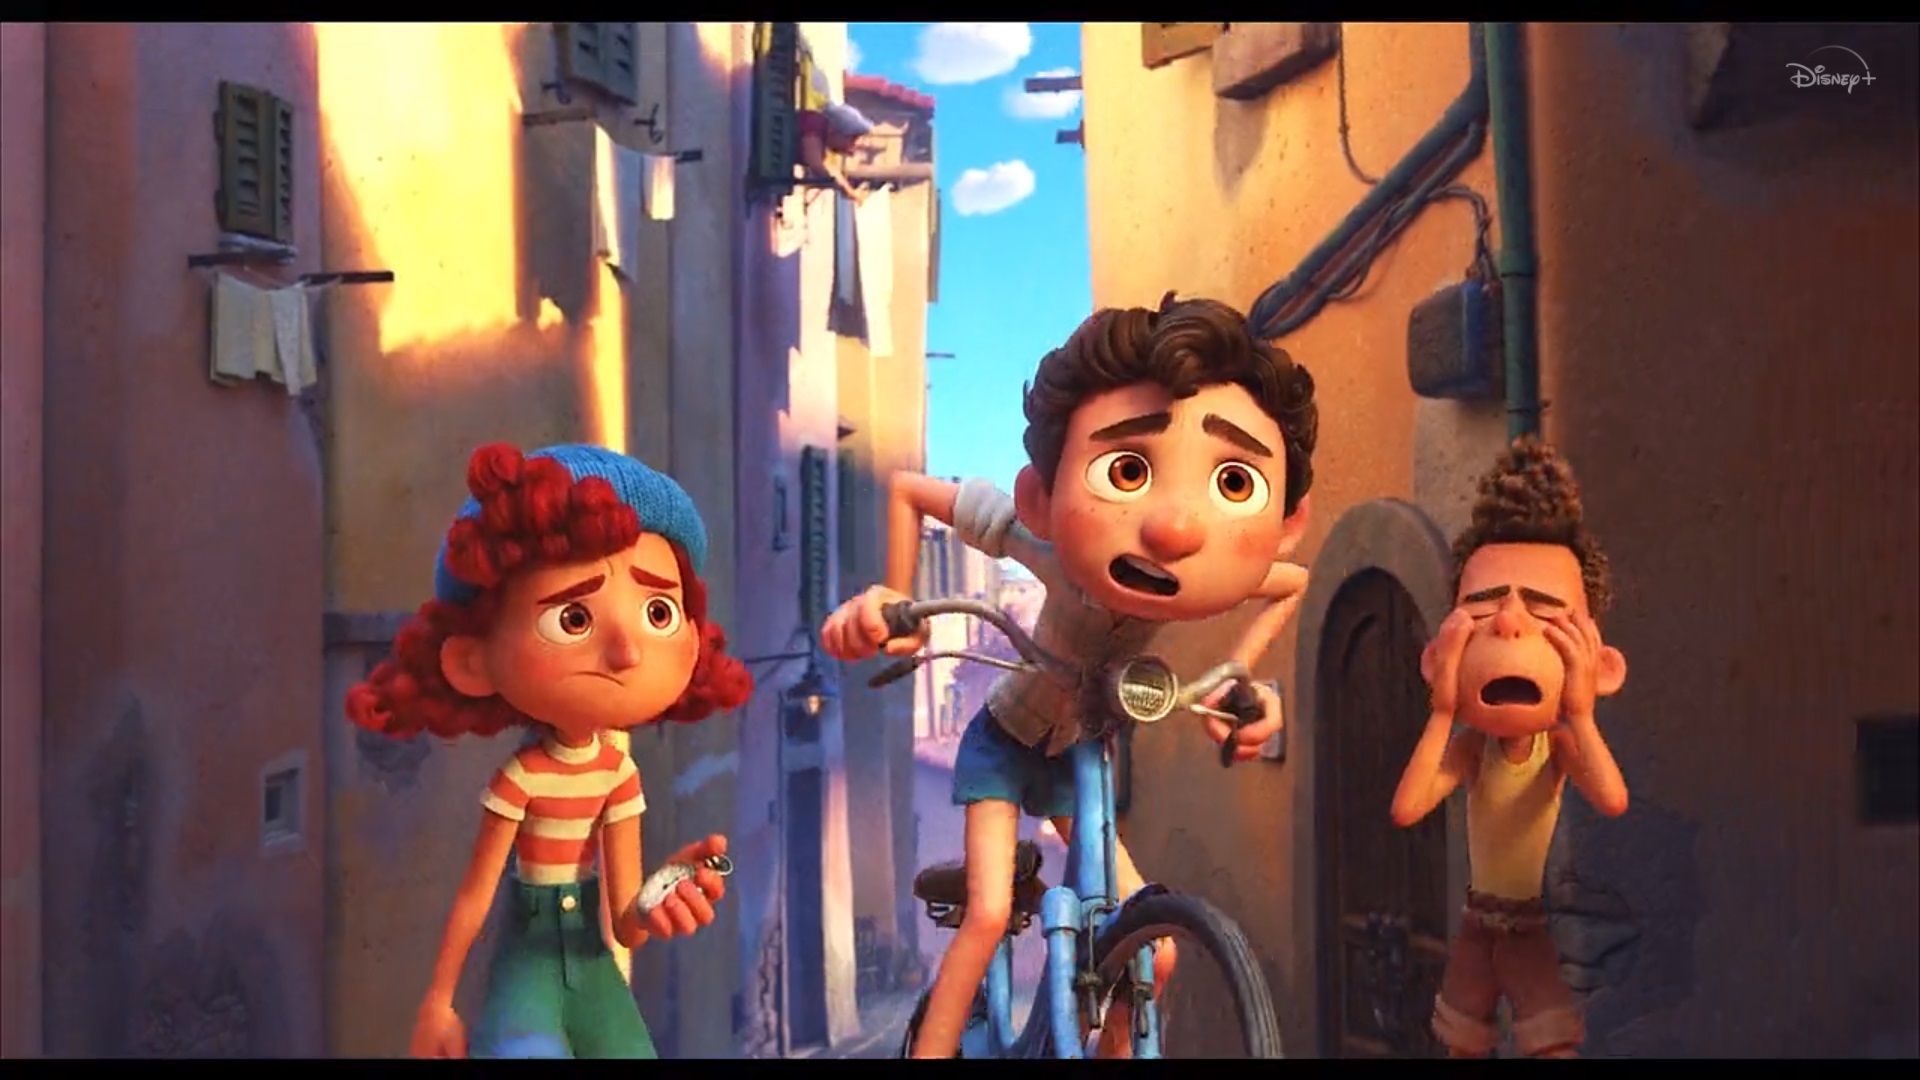 7 ข้อคิดจากการ์ตูนเรื่อง LUCA สอนใจเด็ก ๆ และให้แง่คิดกับพ่อแม่-LUCA-การ์ตูนอนิเมชั่น-การ์ตูนเด็กเล็ก-การ์ตูนดิสนีย์-Disney+-Disney Pixar-Disney Plus Hotstar